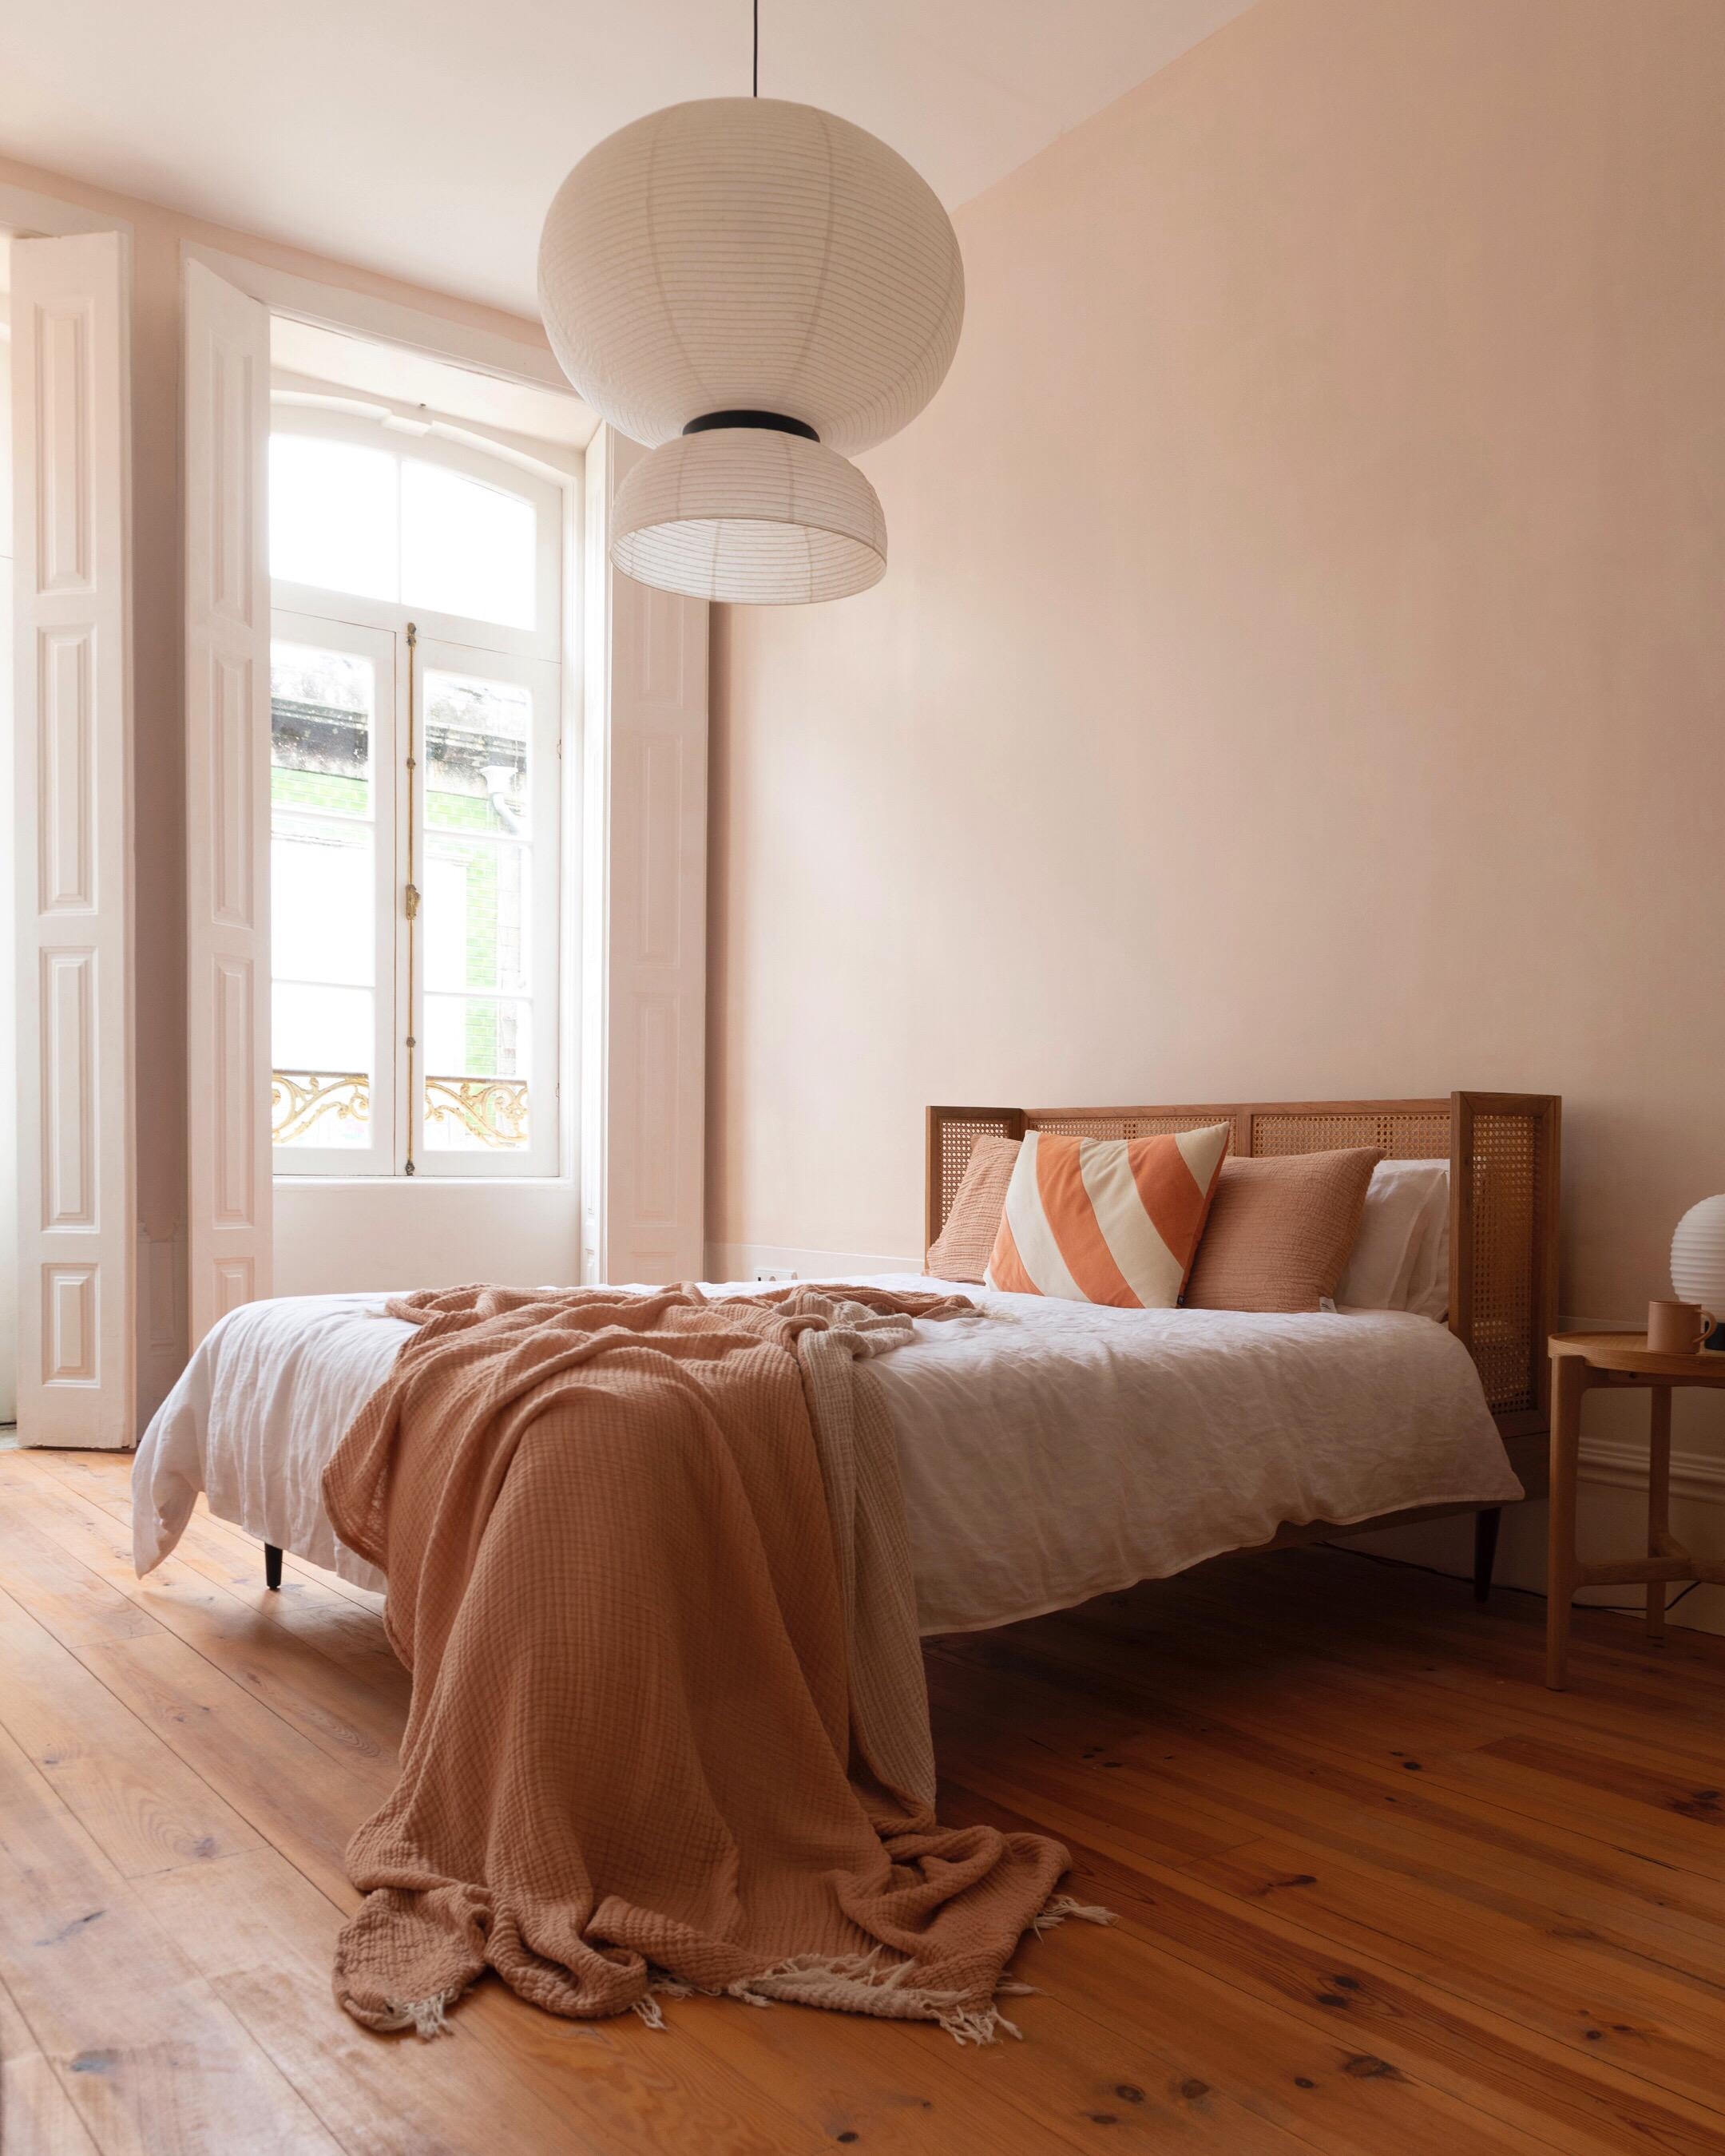 Unser frisch renoviertes Schlafzimmer in Porto. Liebe die sanften warmen Farben ✨ #bett #schlafzimmer #altbau #rattan